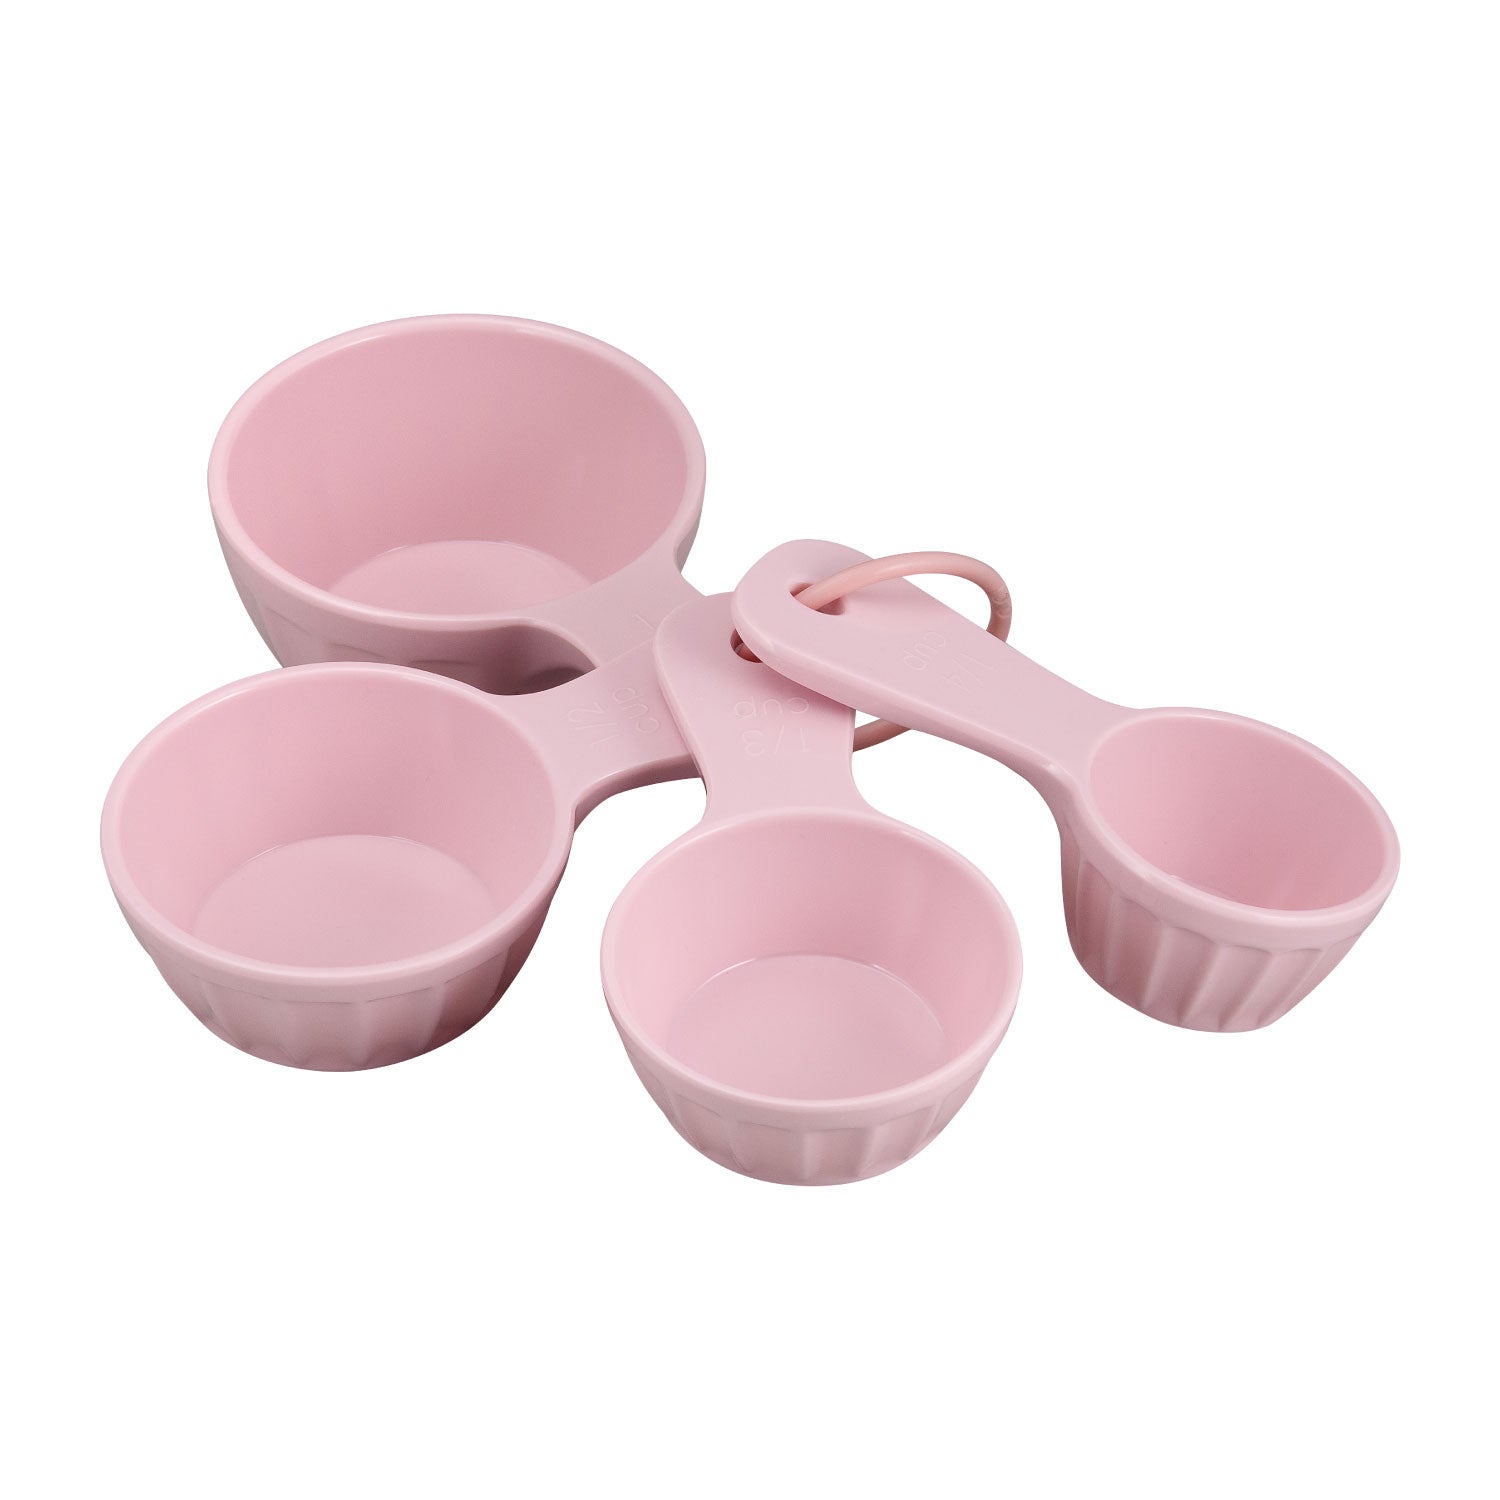 Buy Melamine Colander - Soft Pink